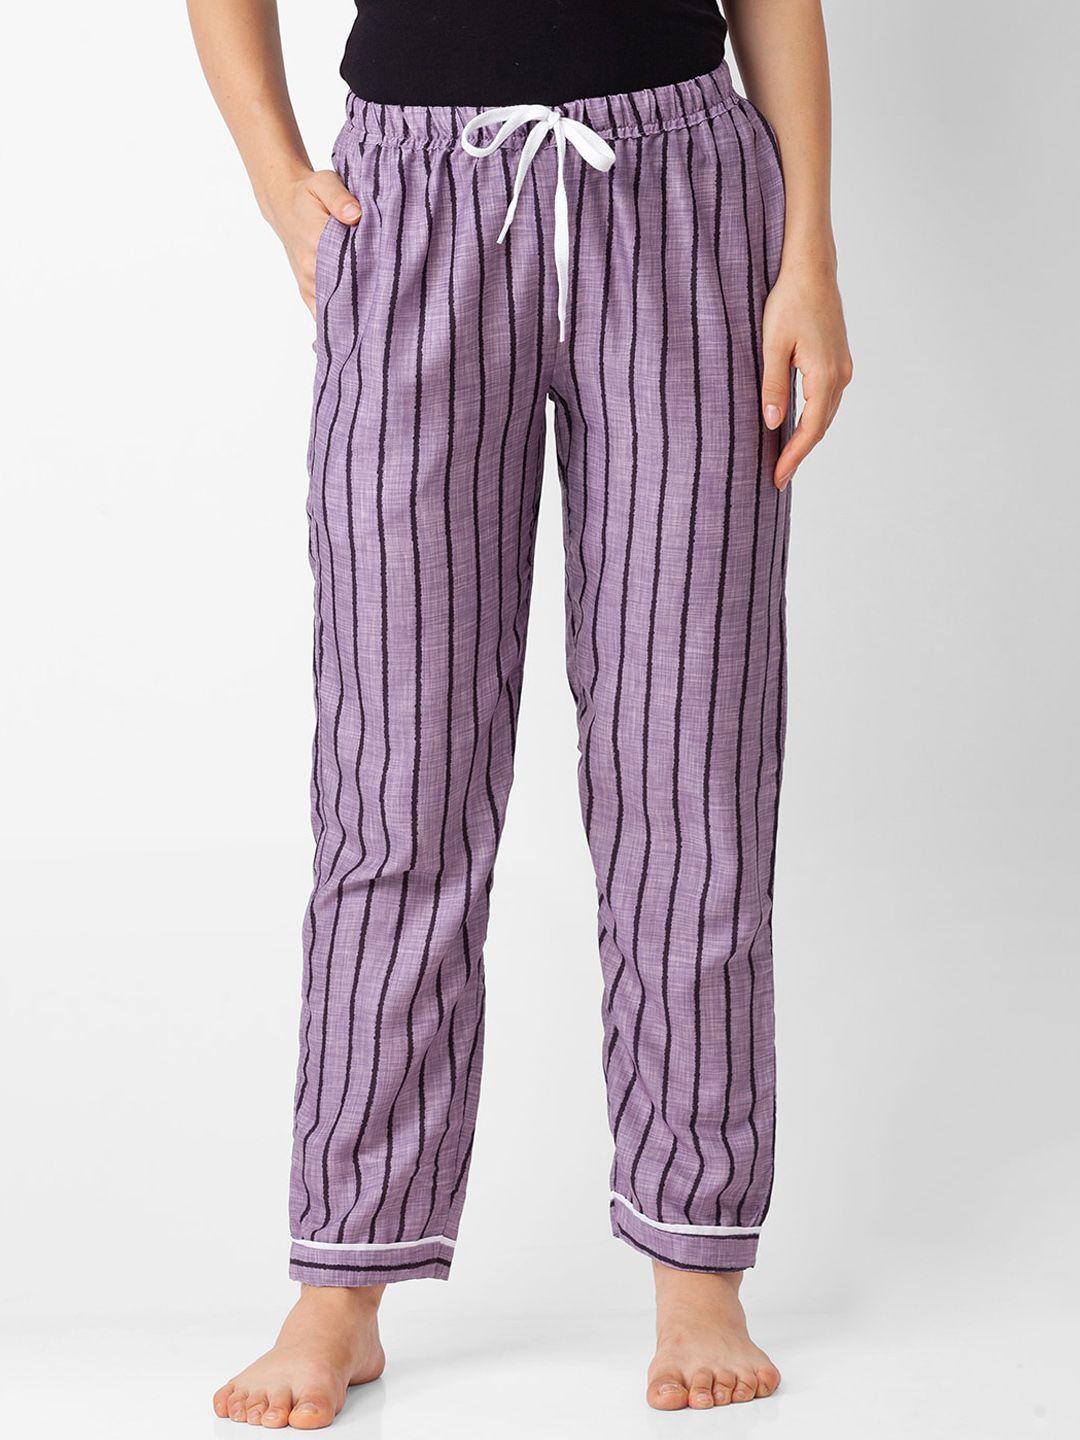 fashionrack women grey striped cotton lounge pants